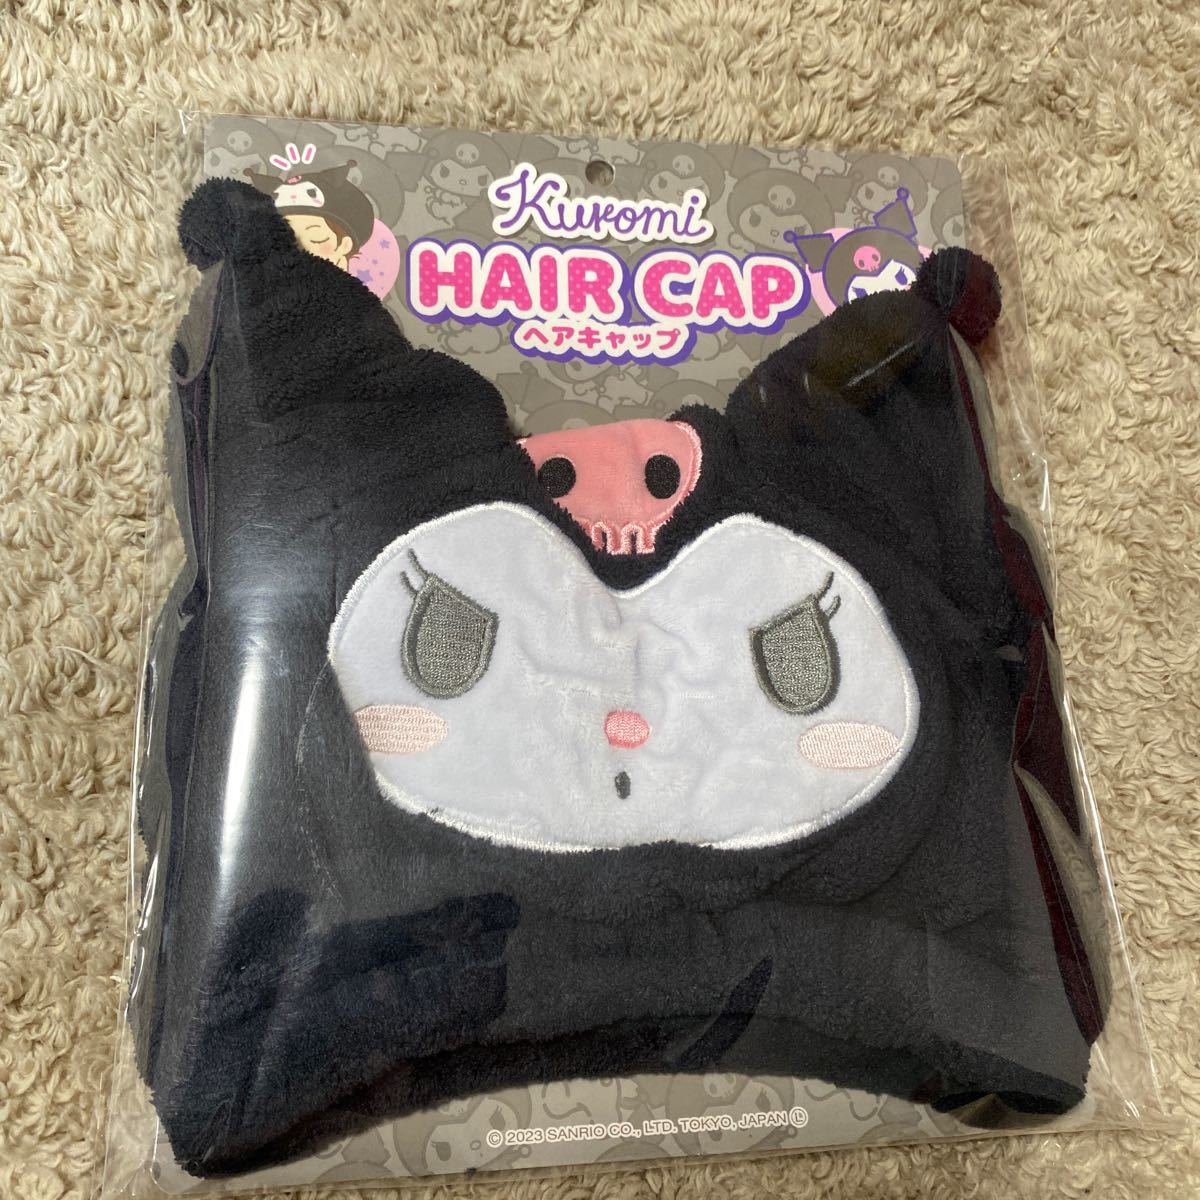  Sanrio black mi hair cap bath pool hair dry towel postage 510 jpy ~